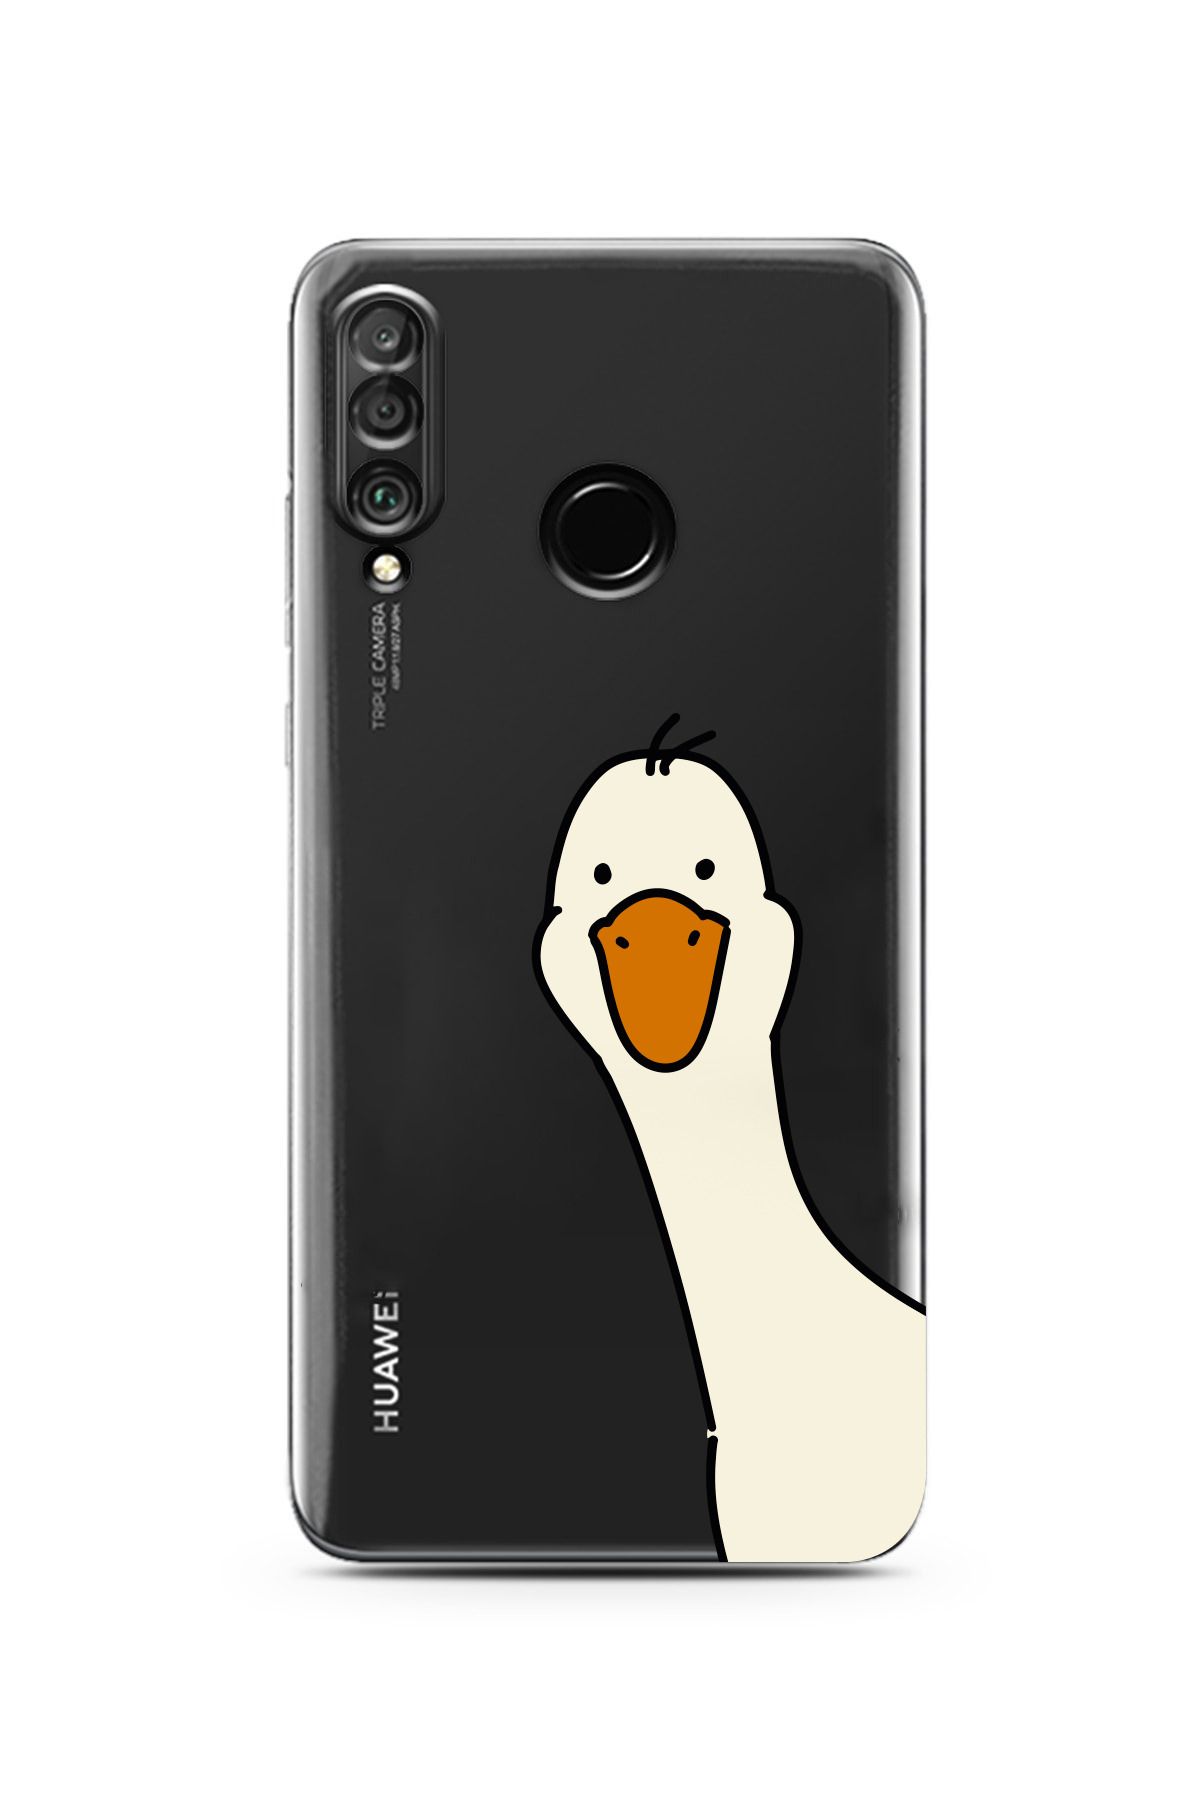 Elorakılıf Huawei P30 Lite Uyumlu Sevimli Ördek Tasarımlı Şeffaf Kılıf